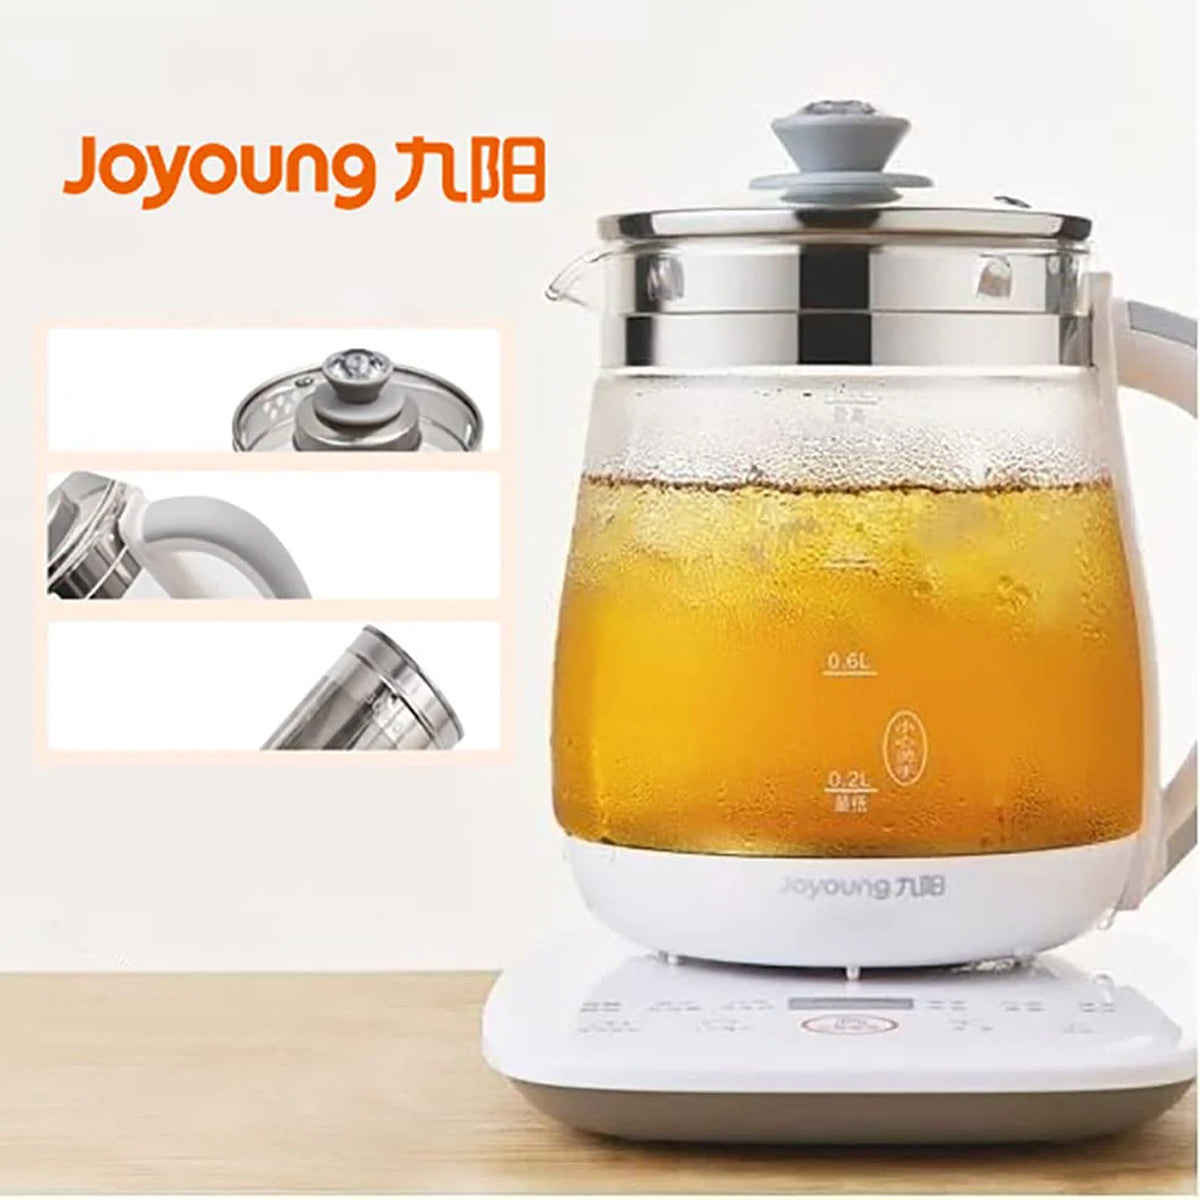 Joyoung Eletric Glass Kettle Water Boiler Multifunction Boiling Bottle 1.5L